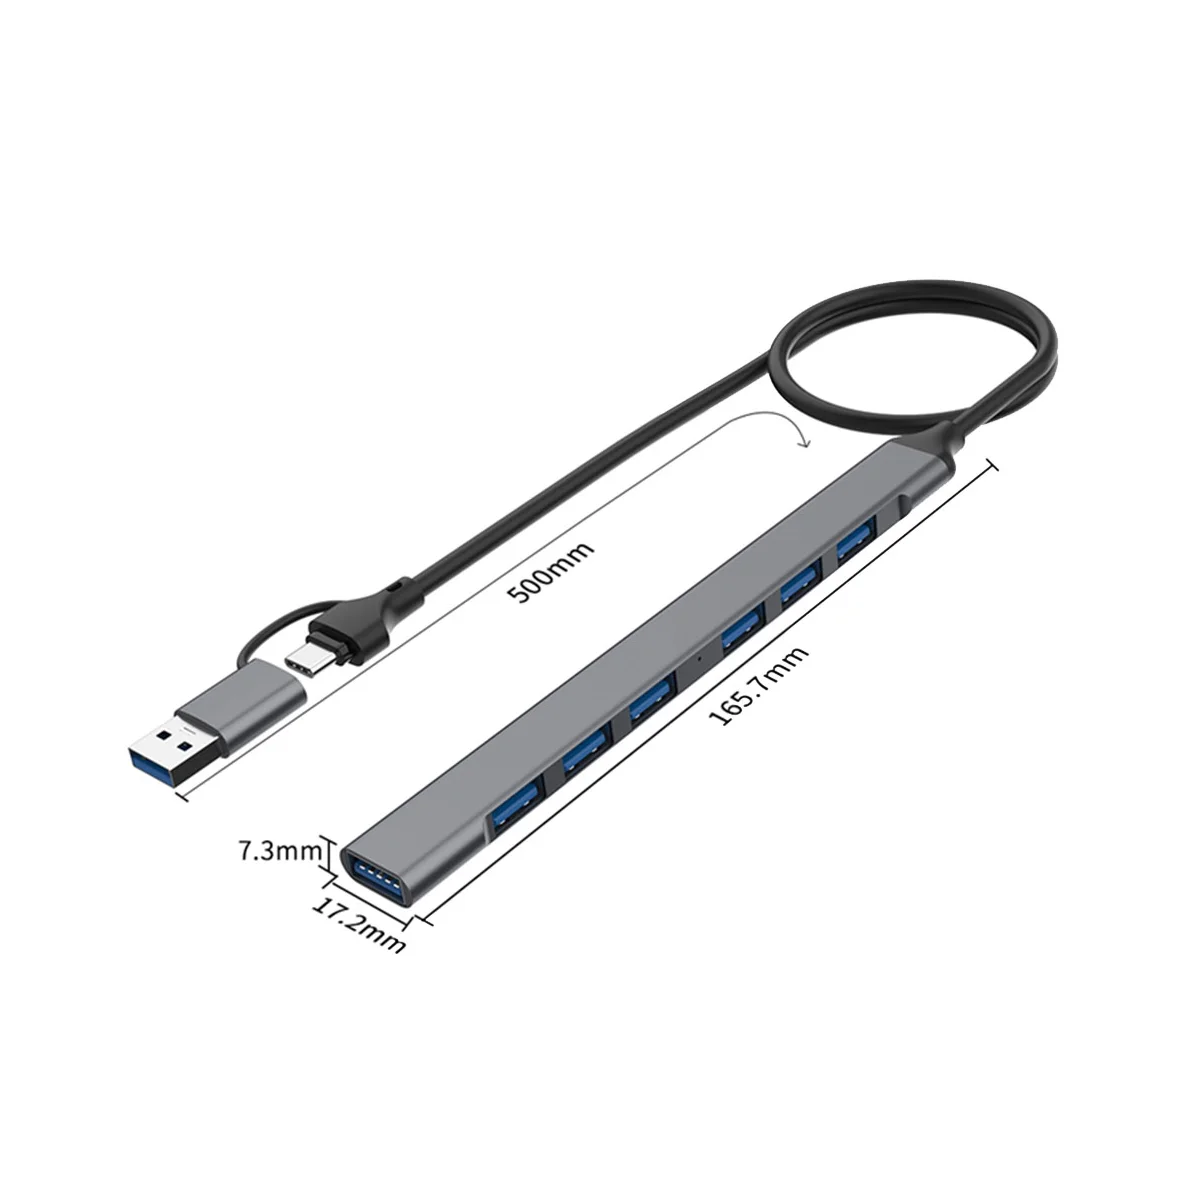 

7 Port USB Hub Slim Mini 2 in 1(USB-C+USB 3.0) To USB 2.0X6+USB 3.0X1 5Gbps Fast Transmission USB3.0 Hub